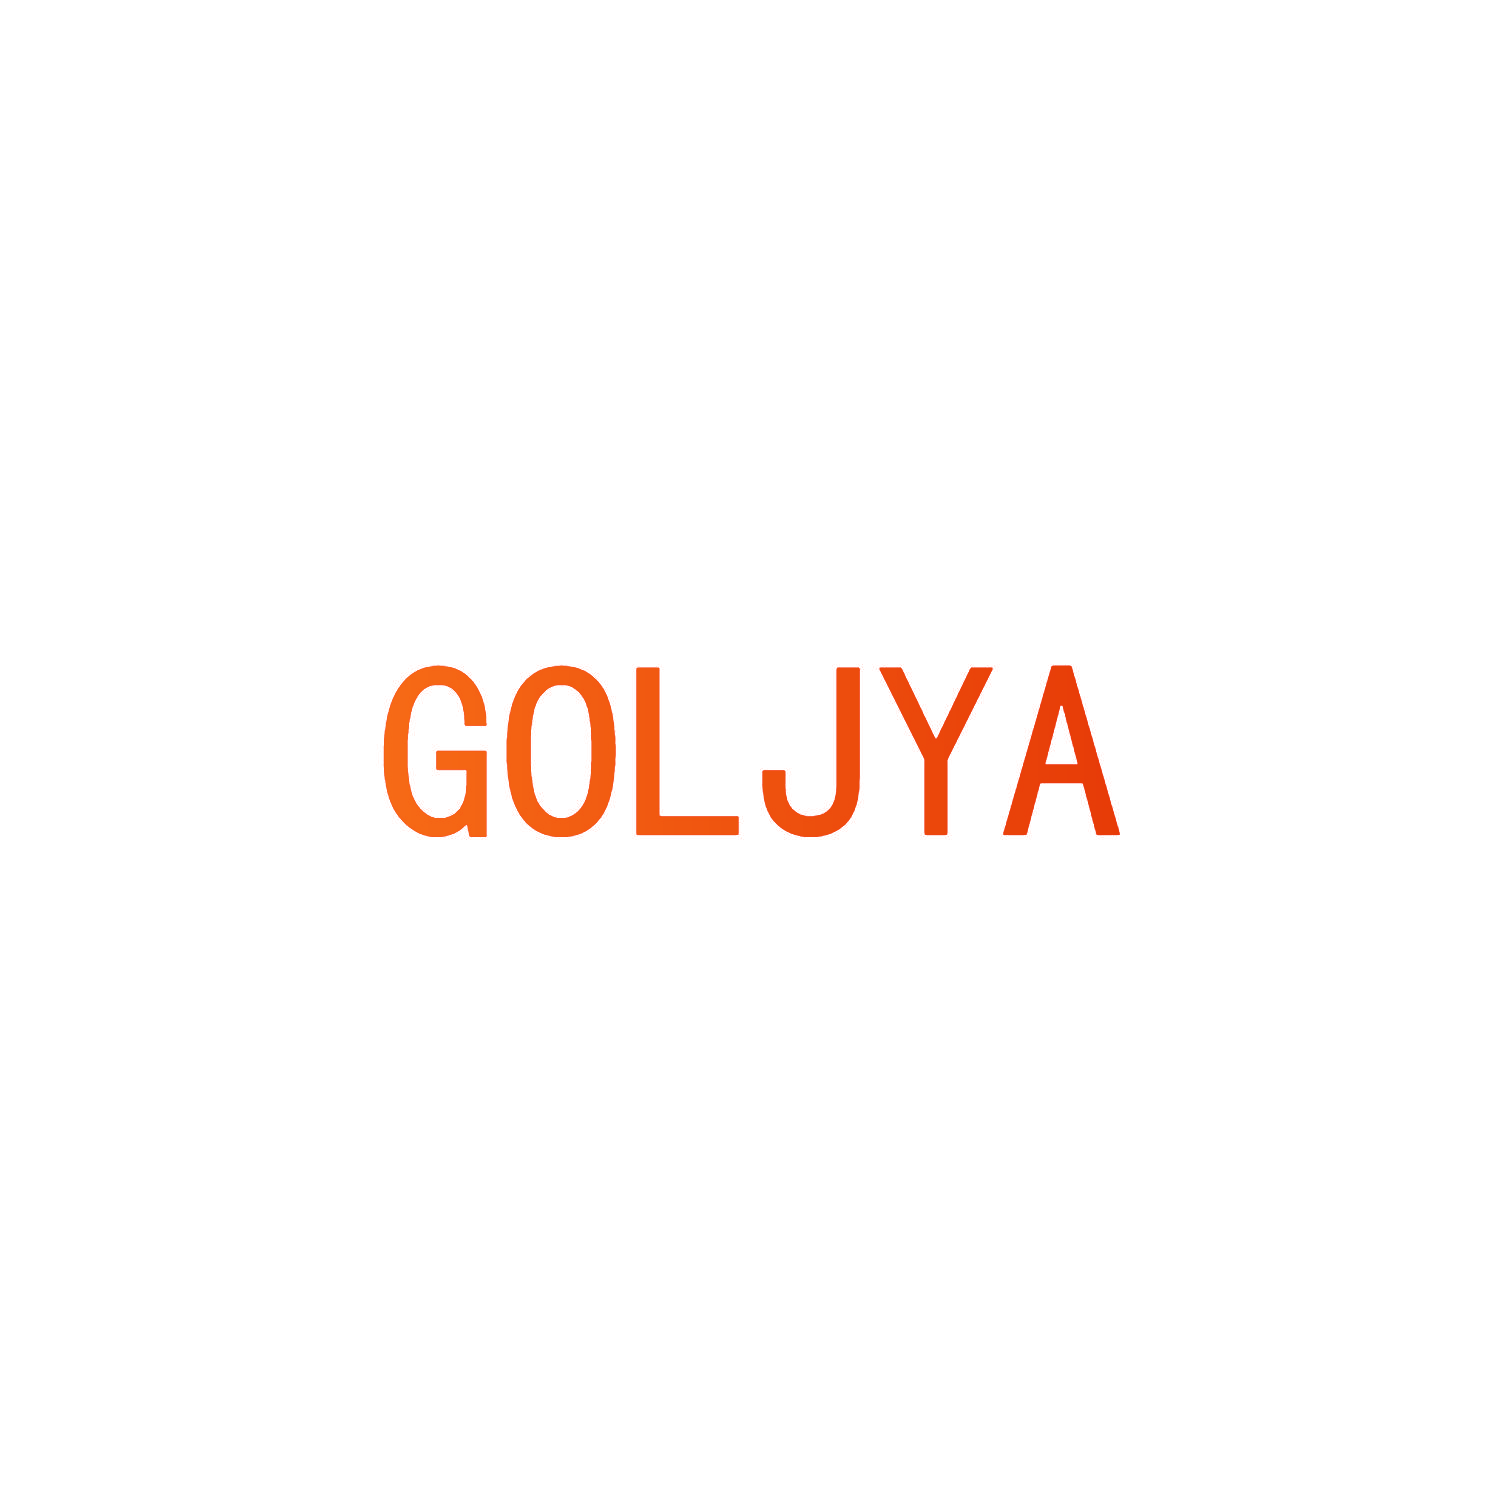 GOLJYA